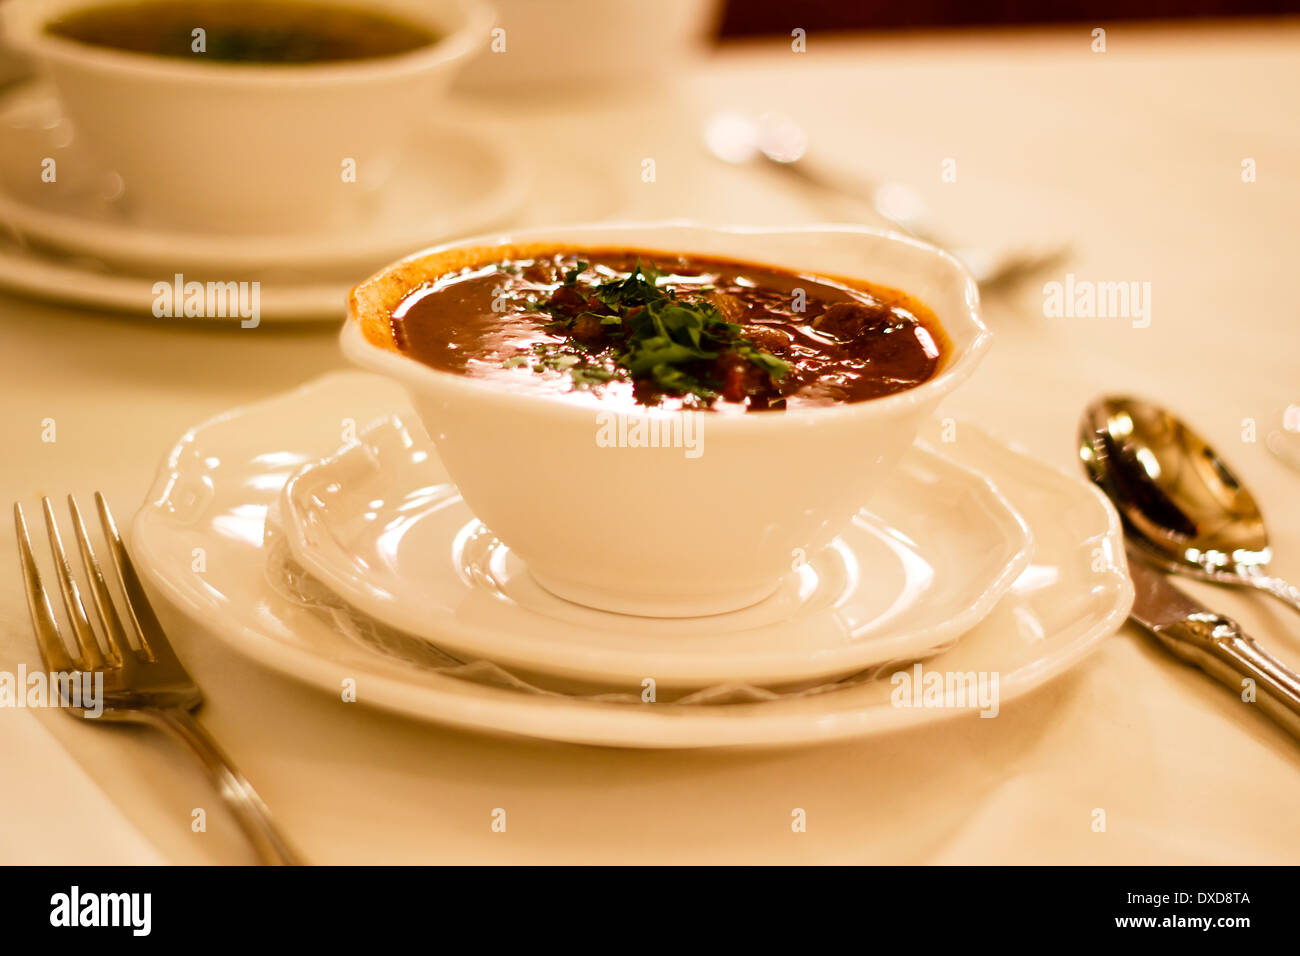 Viennese goulash soup, traditional dish, Café Centrale, Vienna, Austria Stock Photo